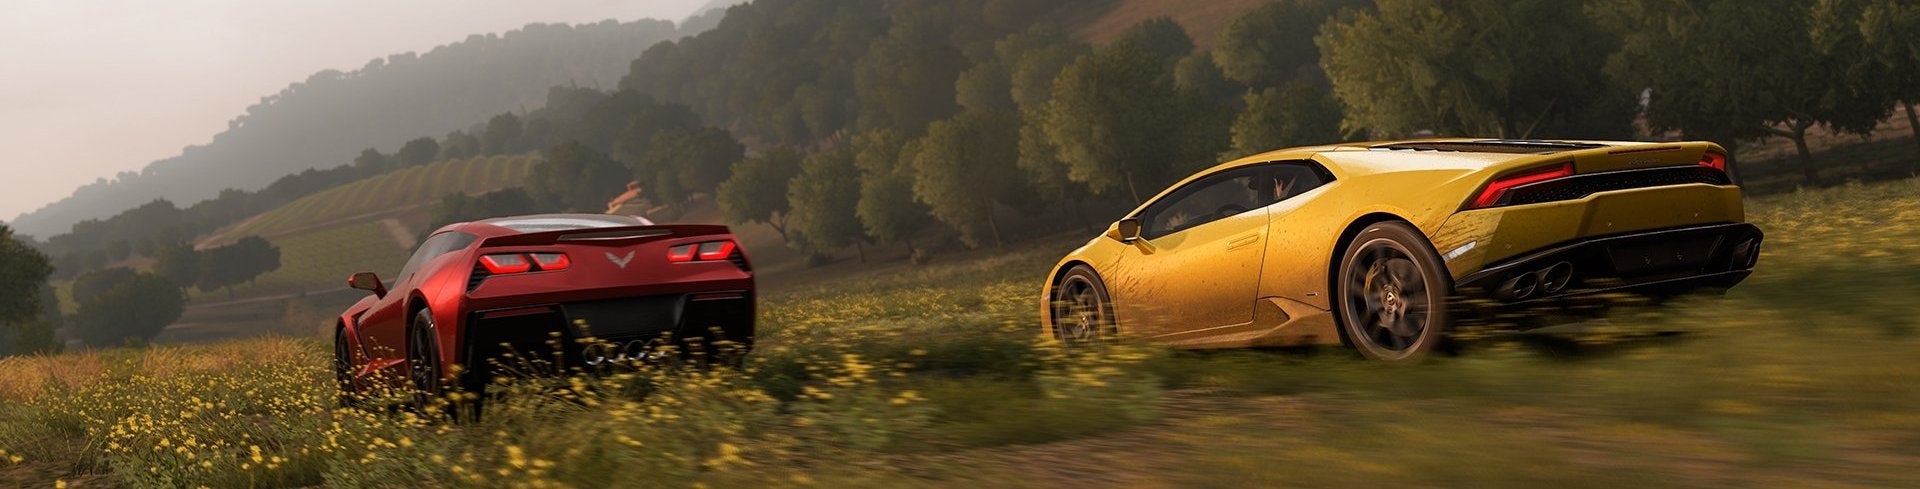 Imagen para Primeras impresiones E3 2014: Forza Horizon 2 traslada su festival al sur de Europa